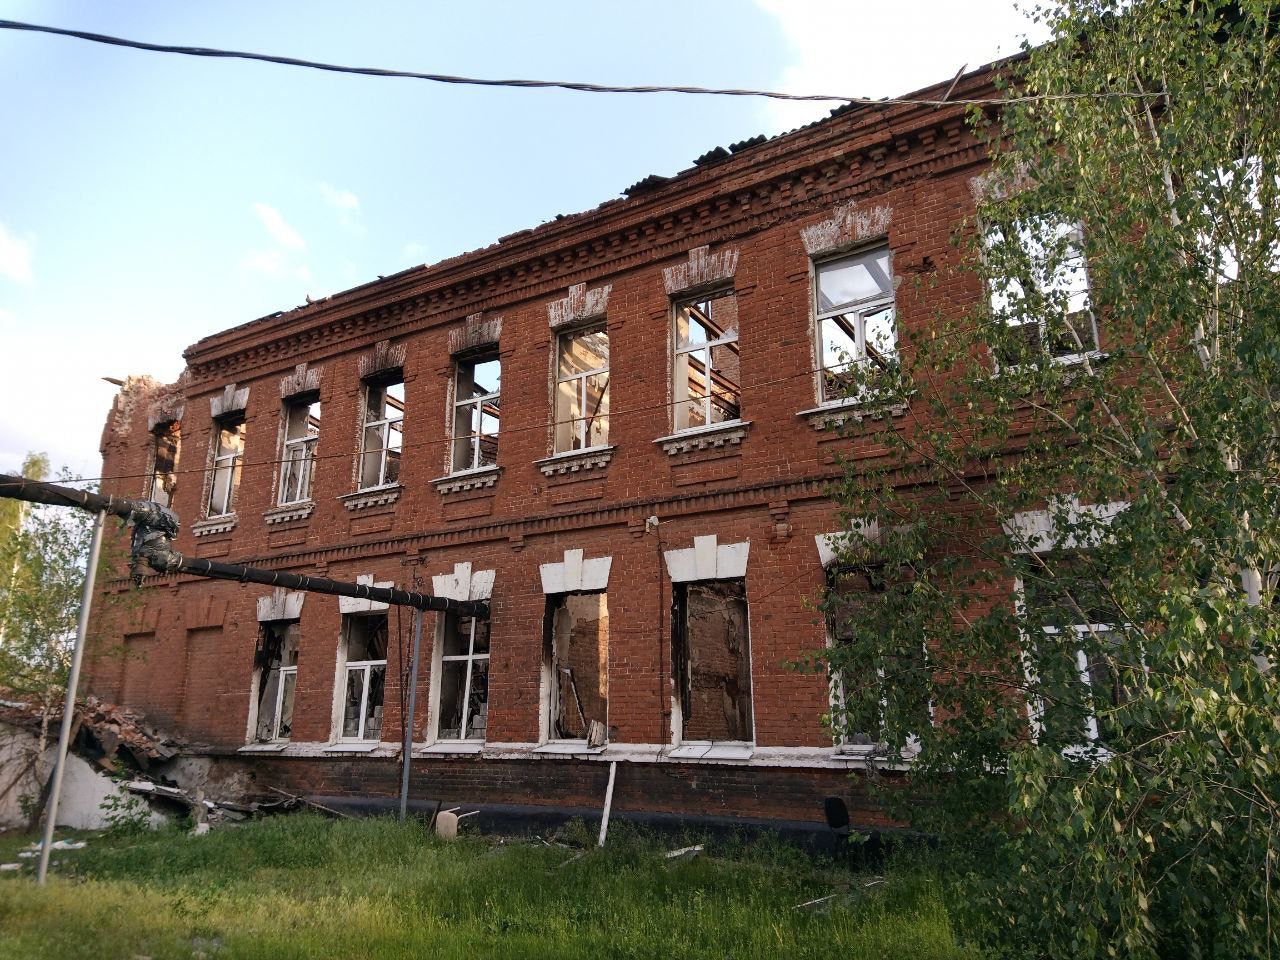 Destroyed school in Ukraine